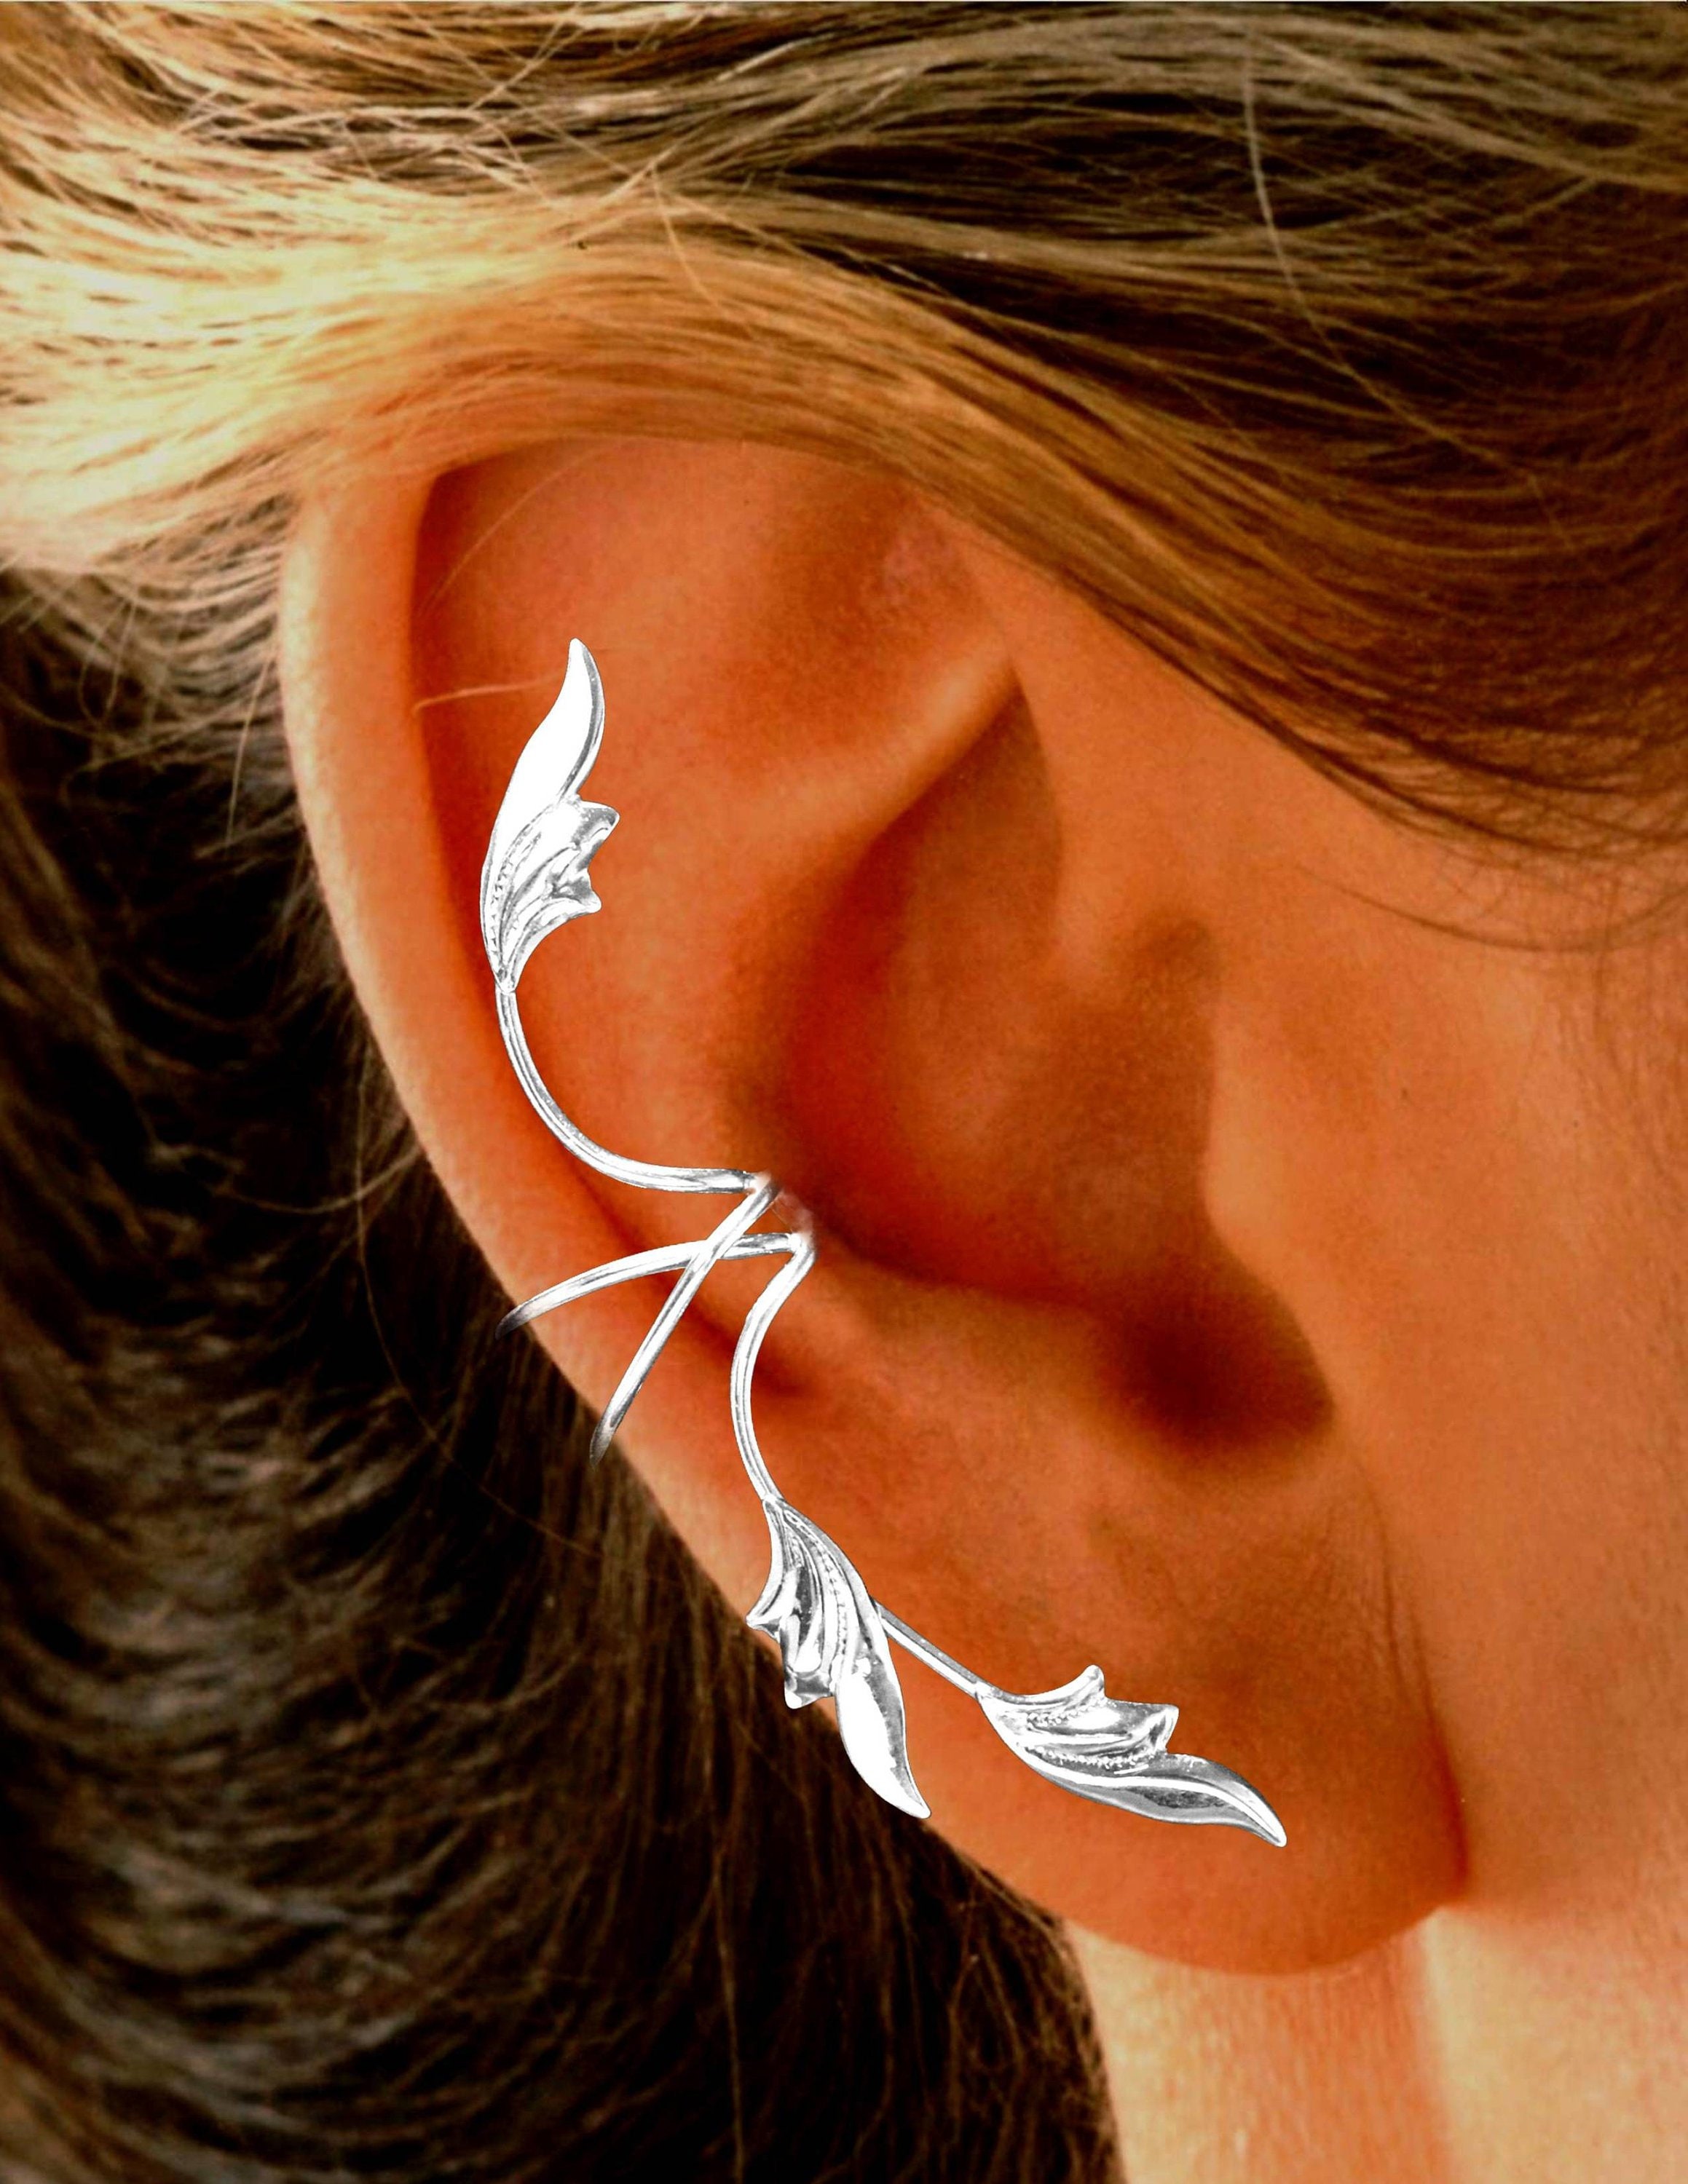 Amazon.com: Szxc Women's Studded Full Ear Spike Cuff Earring for Left Ear -  Pierced & Clip Ear Wrap Cuff - Hypoallergenic Crystal Earrings  (Multi-color): Clothing, Shoes & Jewelry